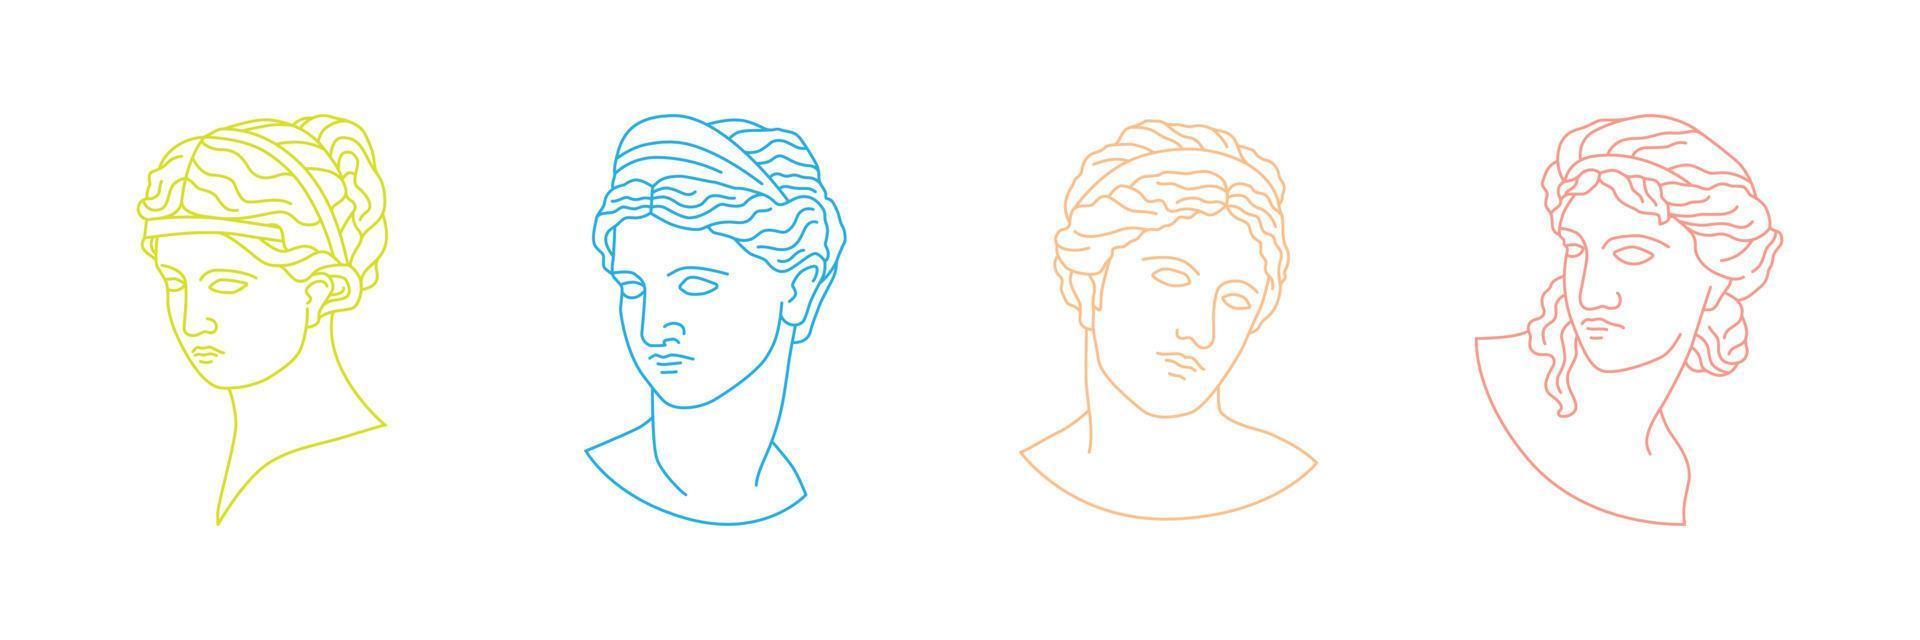 samling av grekiska och romerska porträttskulpturer i handritade illustrationer vektor